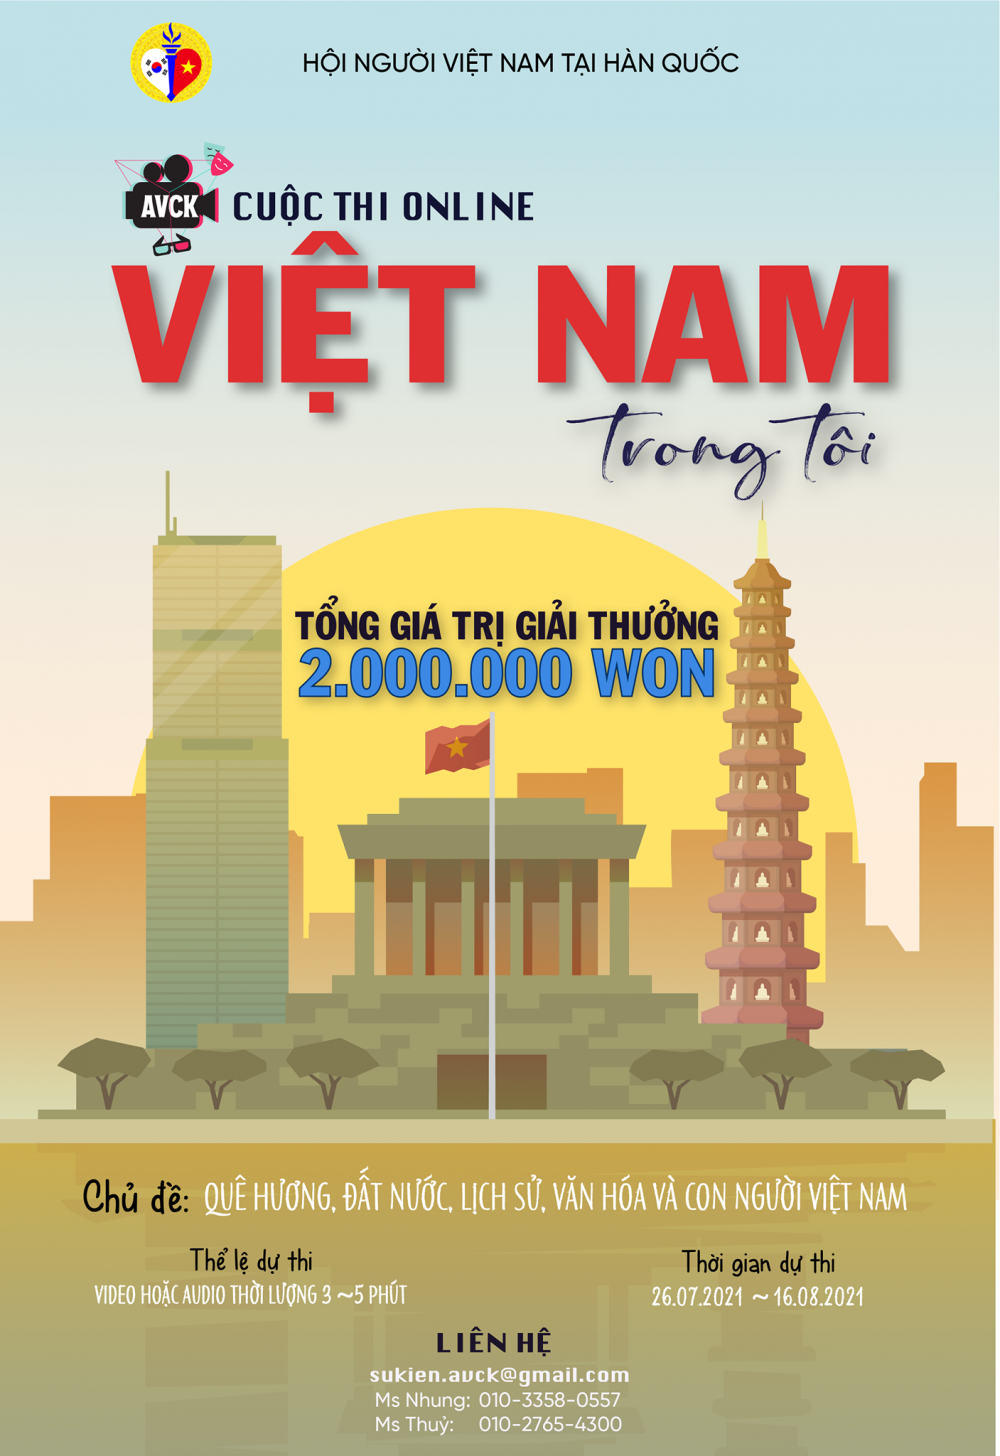 Hội người Việt Nam tại Hàn Quốc tổ chức cuộc thi “Việt Nam trong tôi”